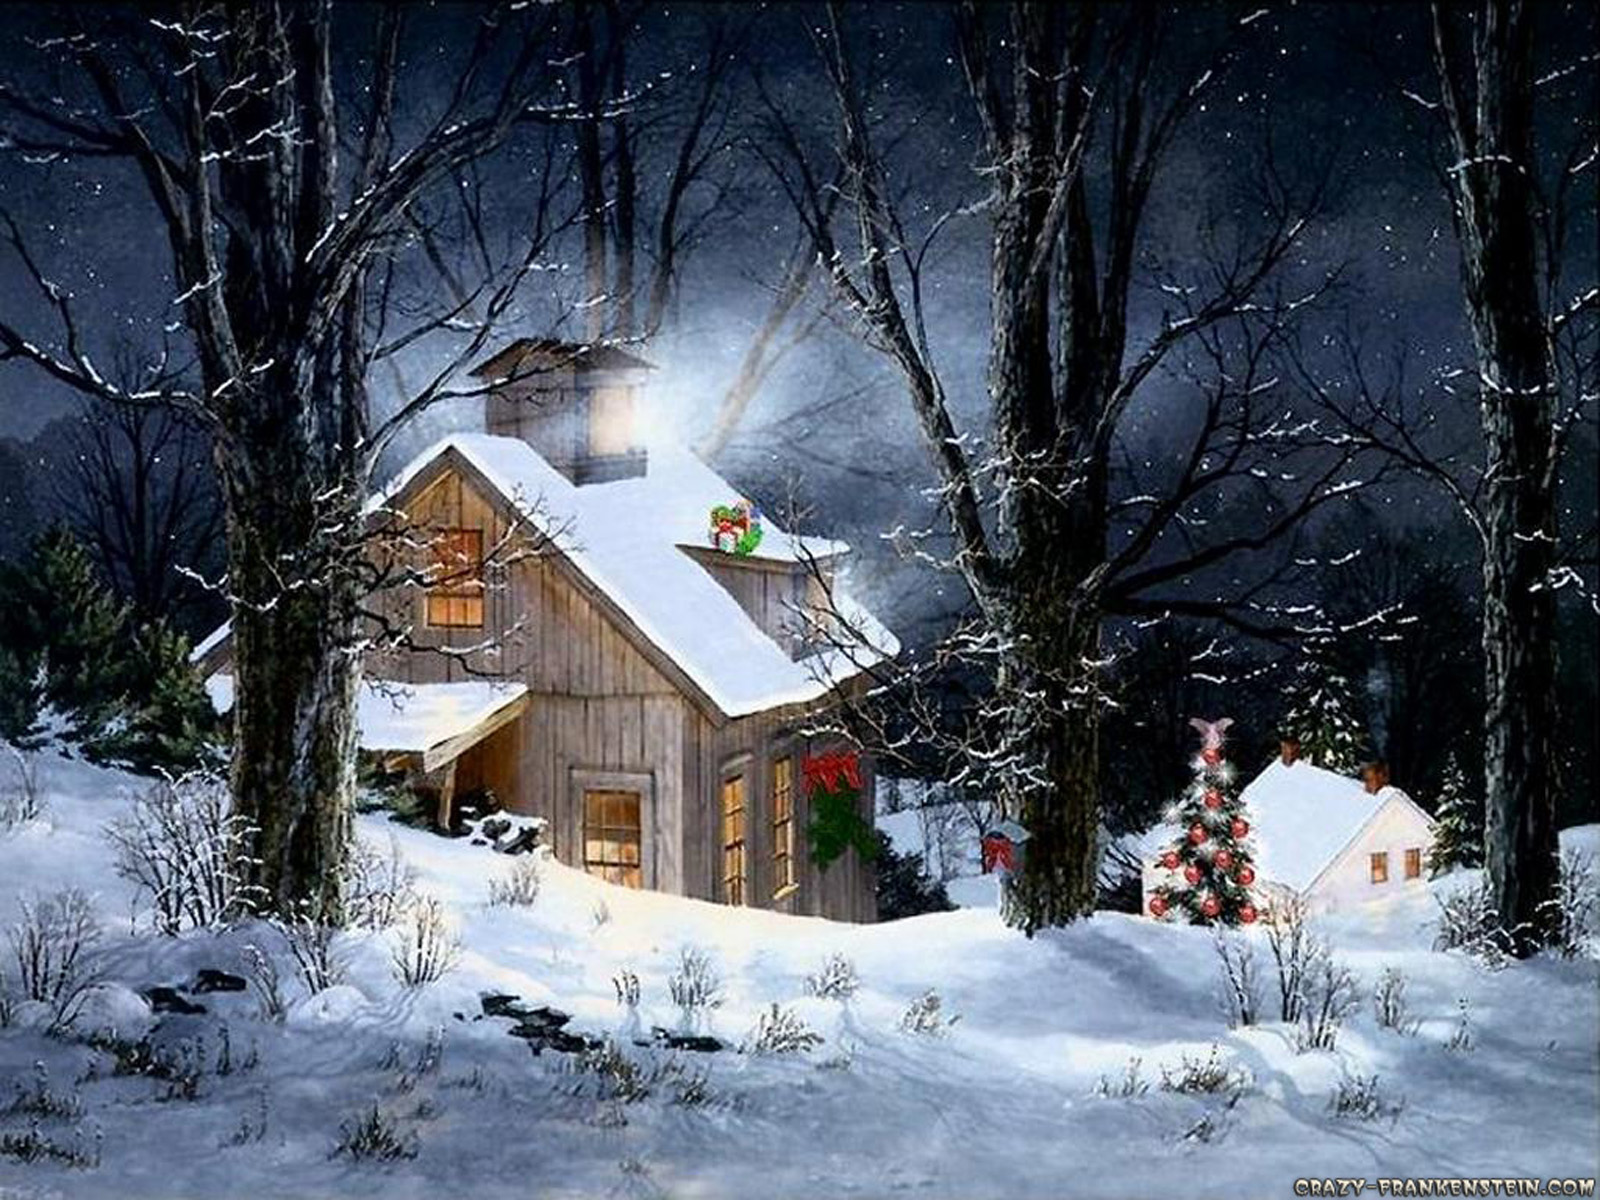 Скачать обои бесплатно Зима, Снег, Рождество, Дом, Художественные картинка на рабочий стол ПК